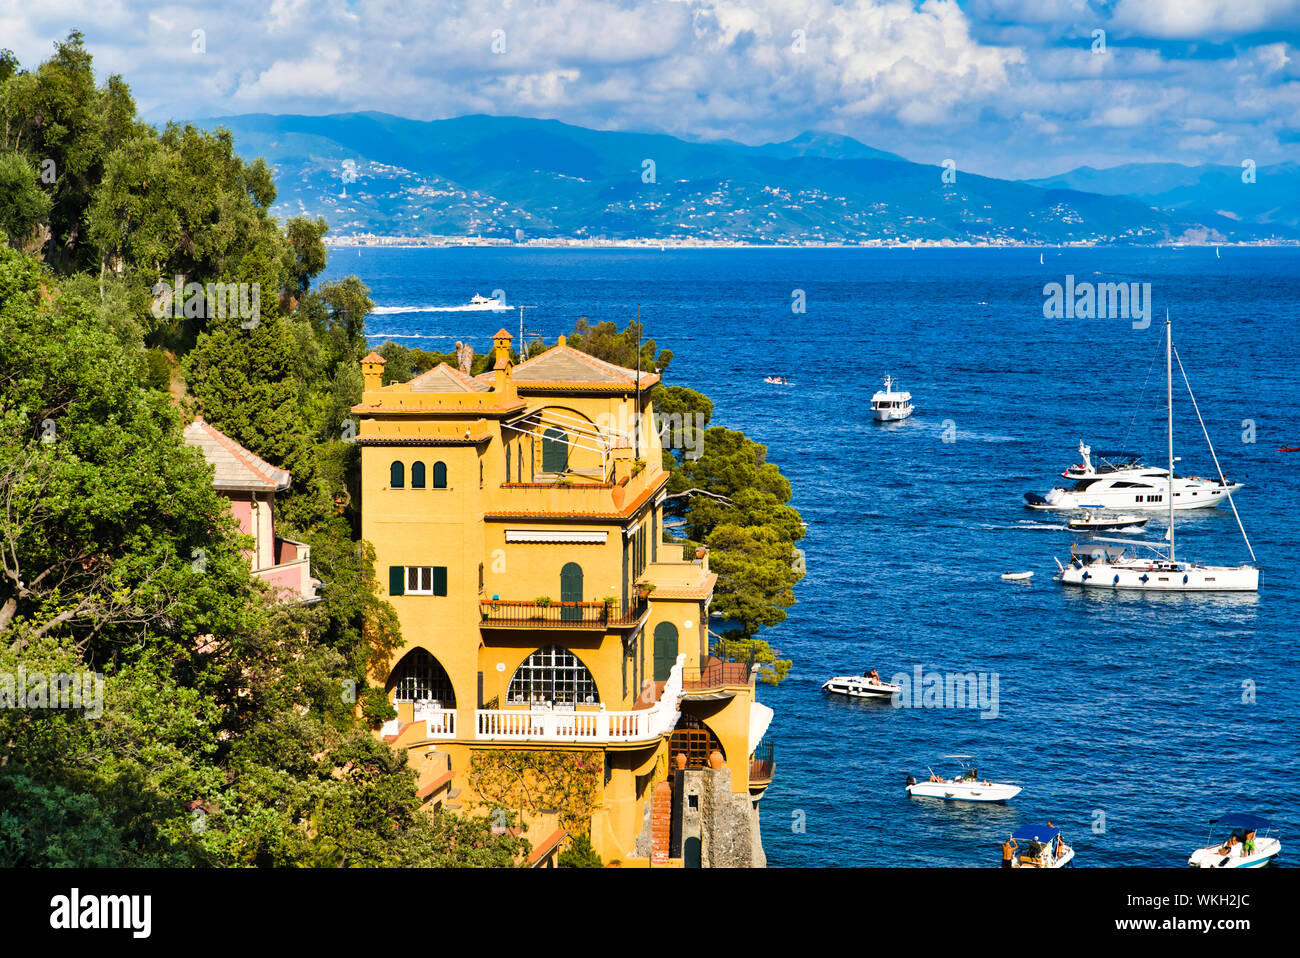 Portofino, Italia - 15 agosto 2019: bel porto la Riviera Italiana, case sulla scogliera, Barche e yachts sull'acqua / un popolare resort in Foto Stock